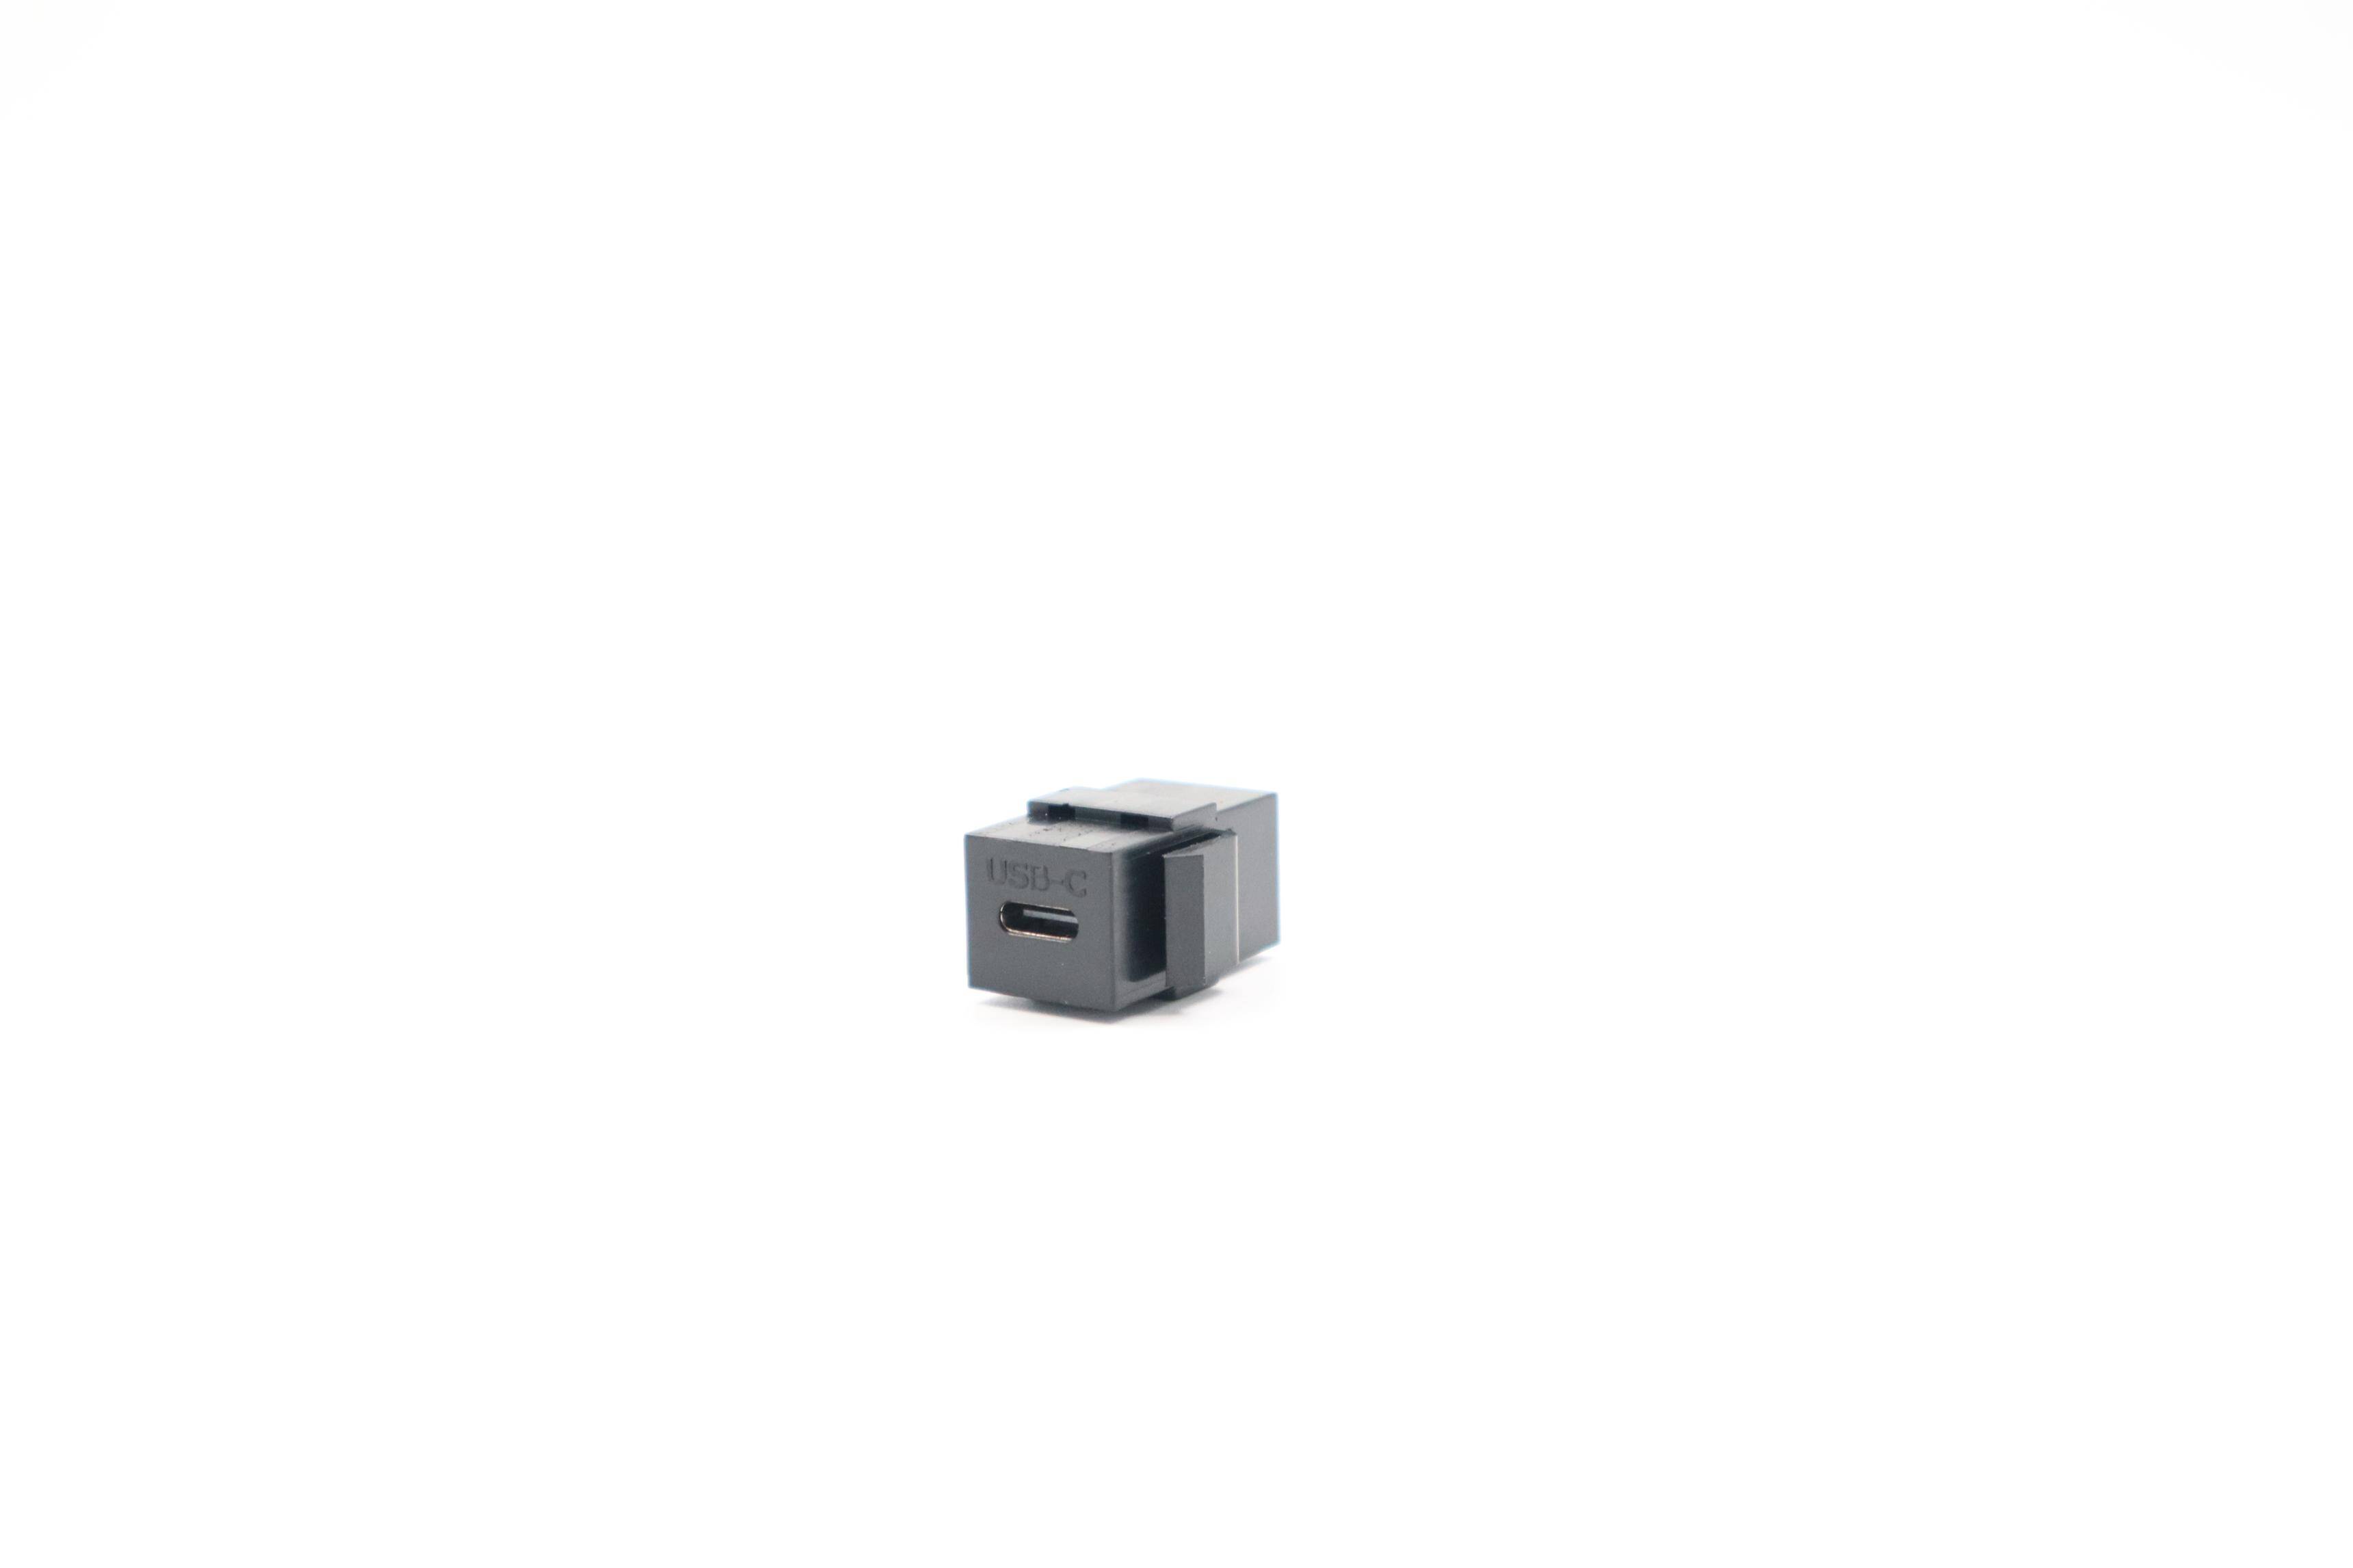 ZŁĄCZE USB C 3.1 KEYSTONE CZARNE (Zdjęcie 3)